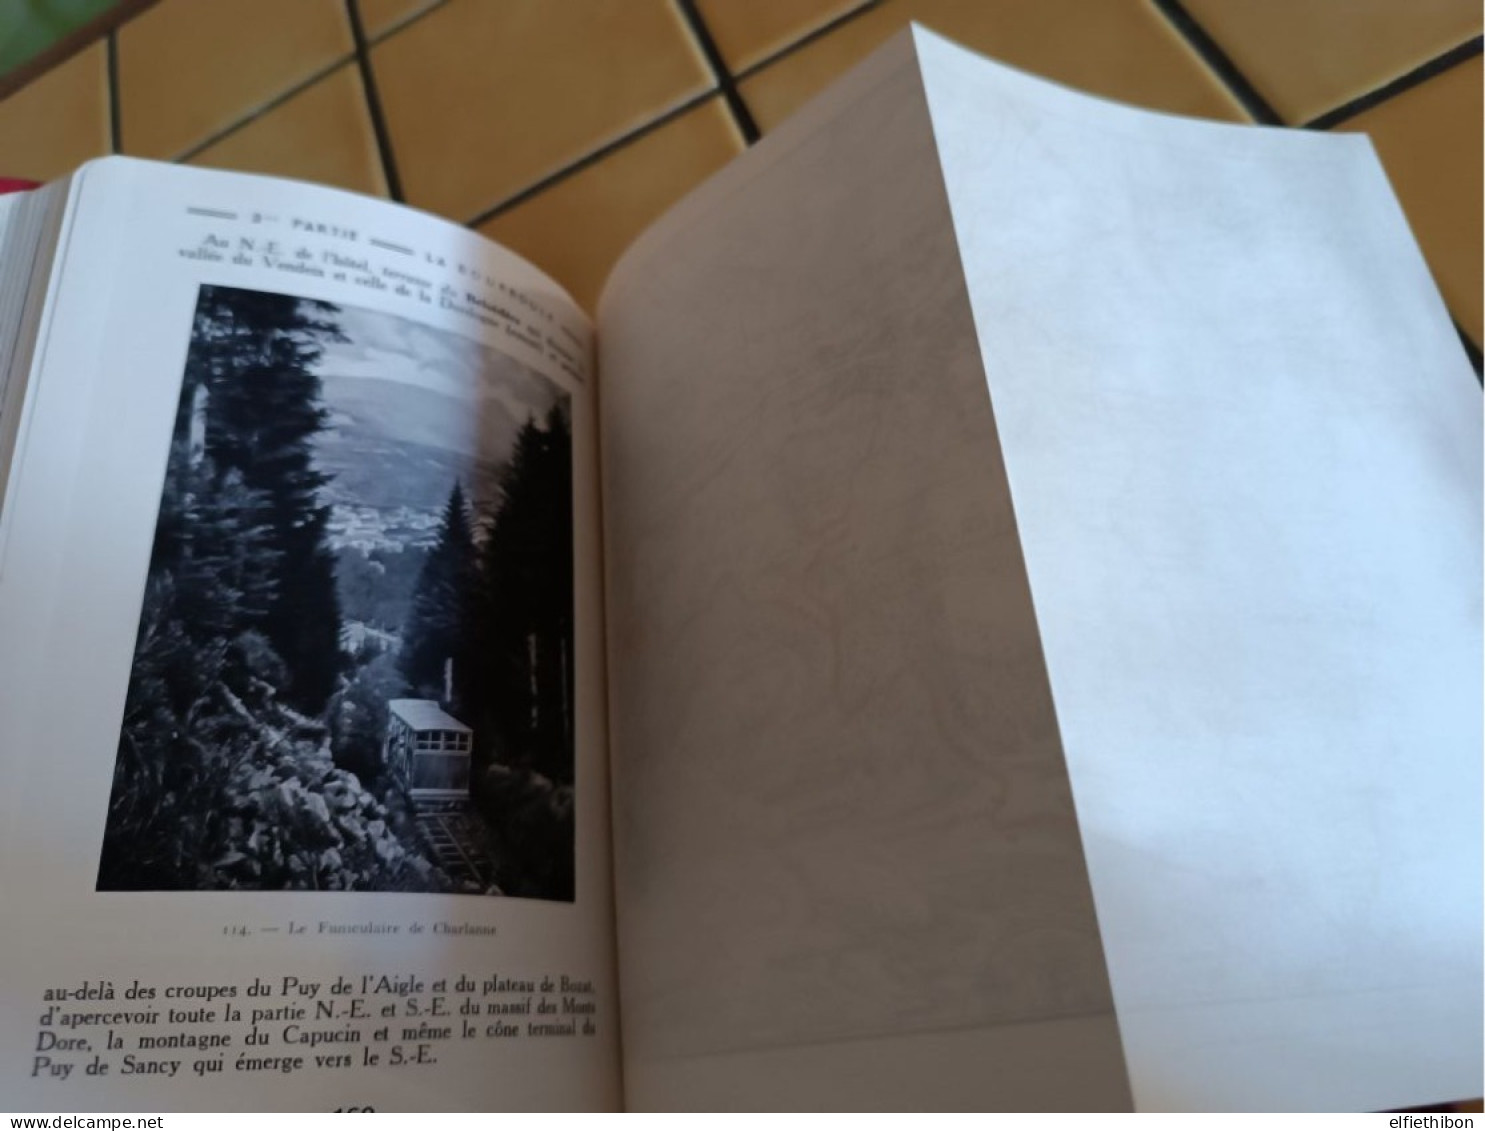 La Bourboule Et L' Auvergne.1950.Guide Cany. Numéro 744/800. Nb. Ill. / Cartes Dépliantes. - Auvergne